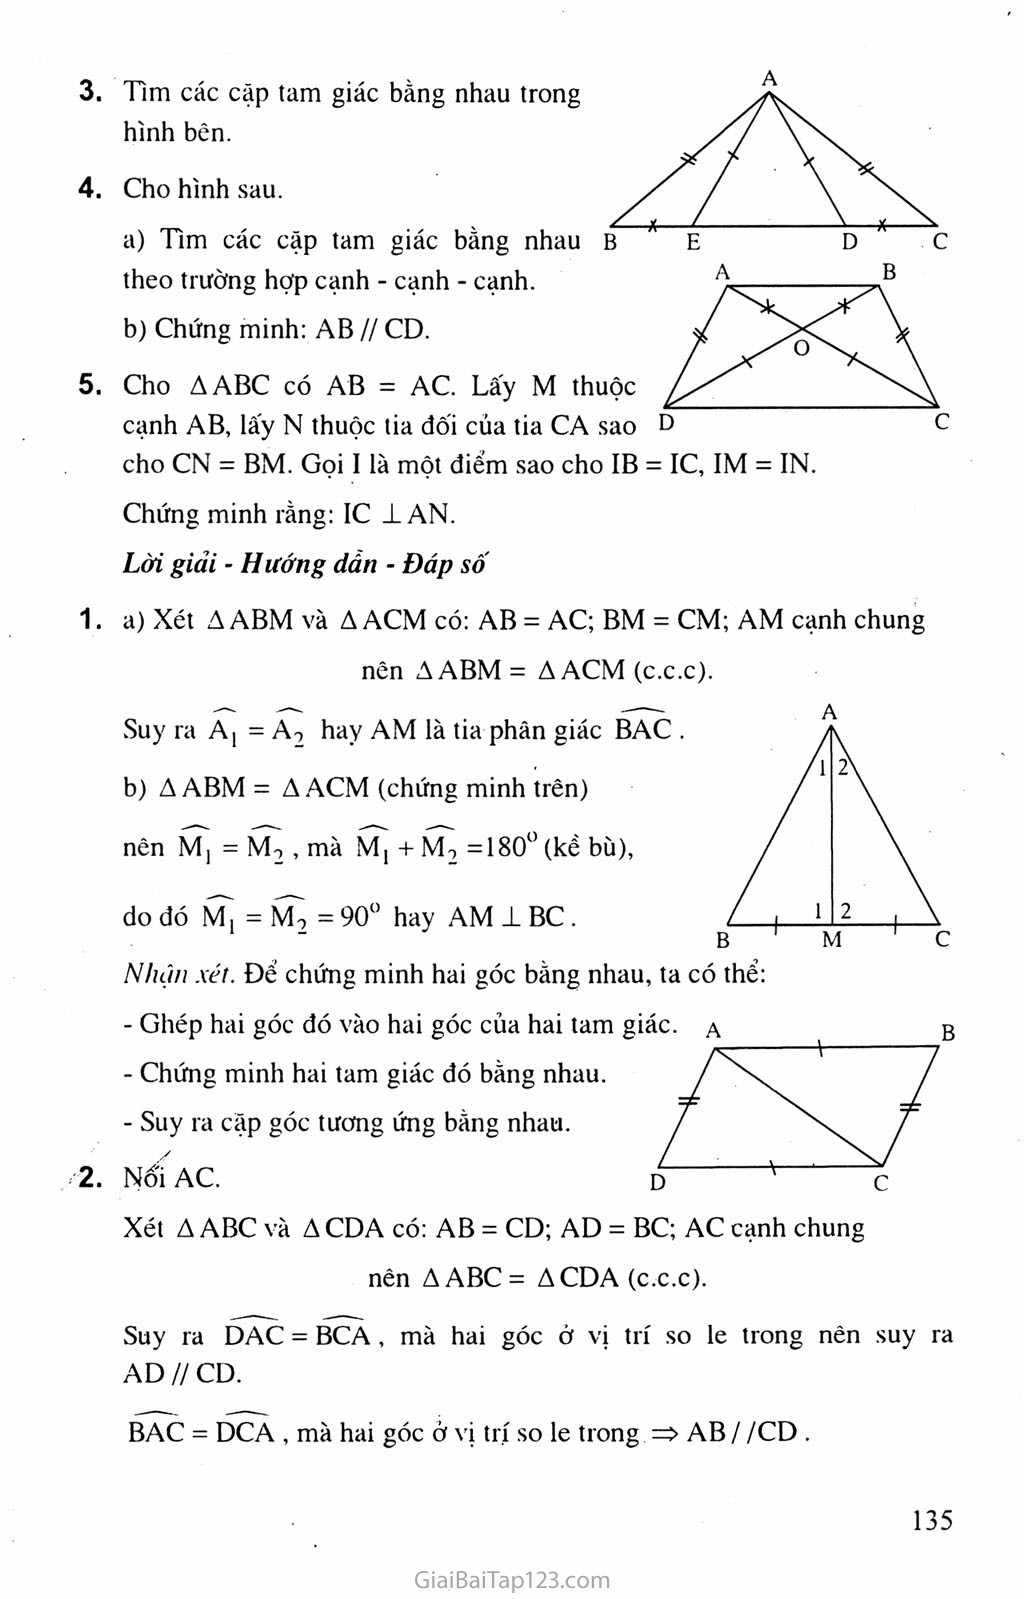 Bài 3. Trường hợp bằng nhau thứ nhất của tam giác: cạnh - cạnh - cạnh (c.c.c) trang 5